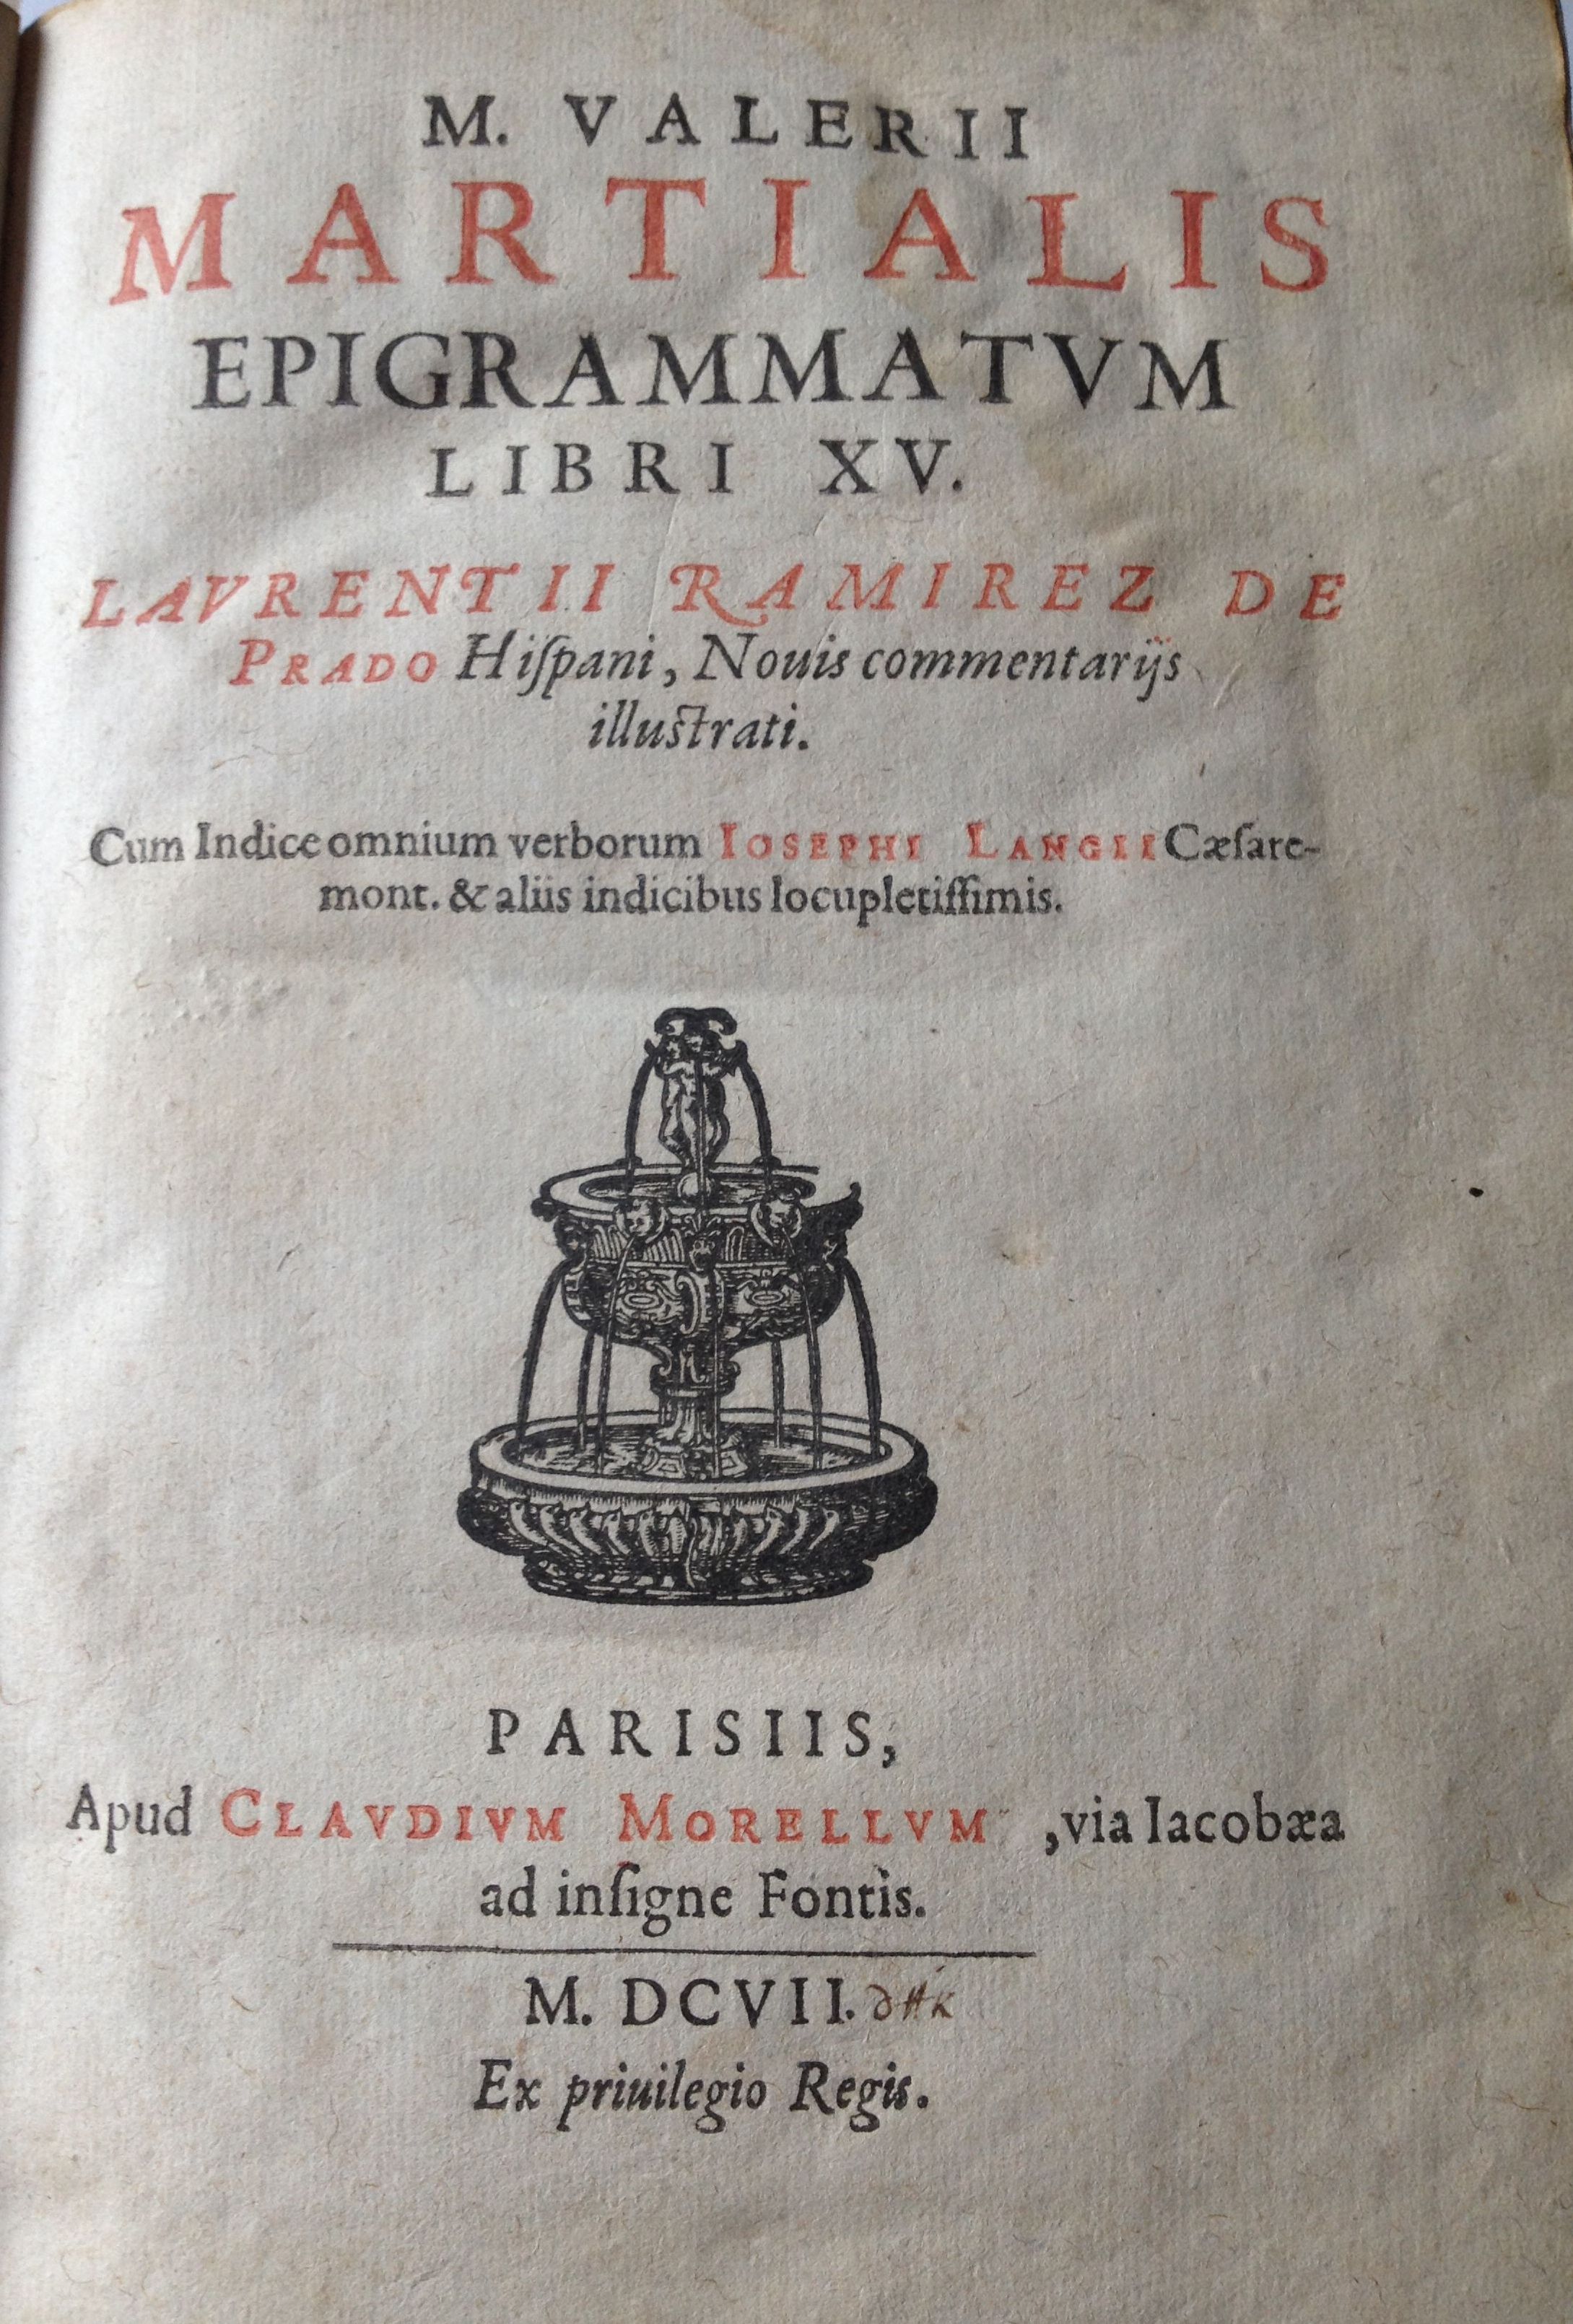 Epigrammatum libri XV, 1607